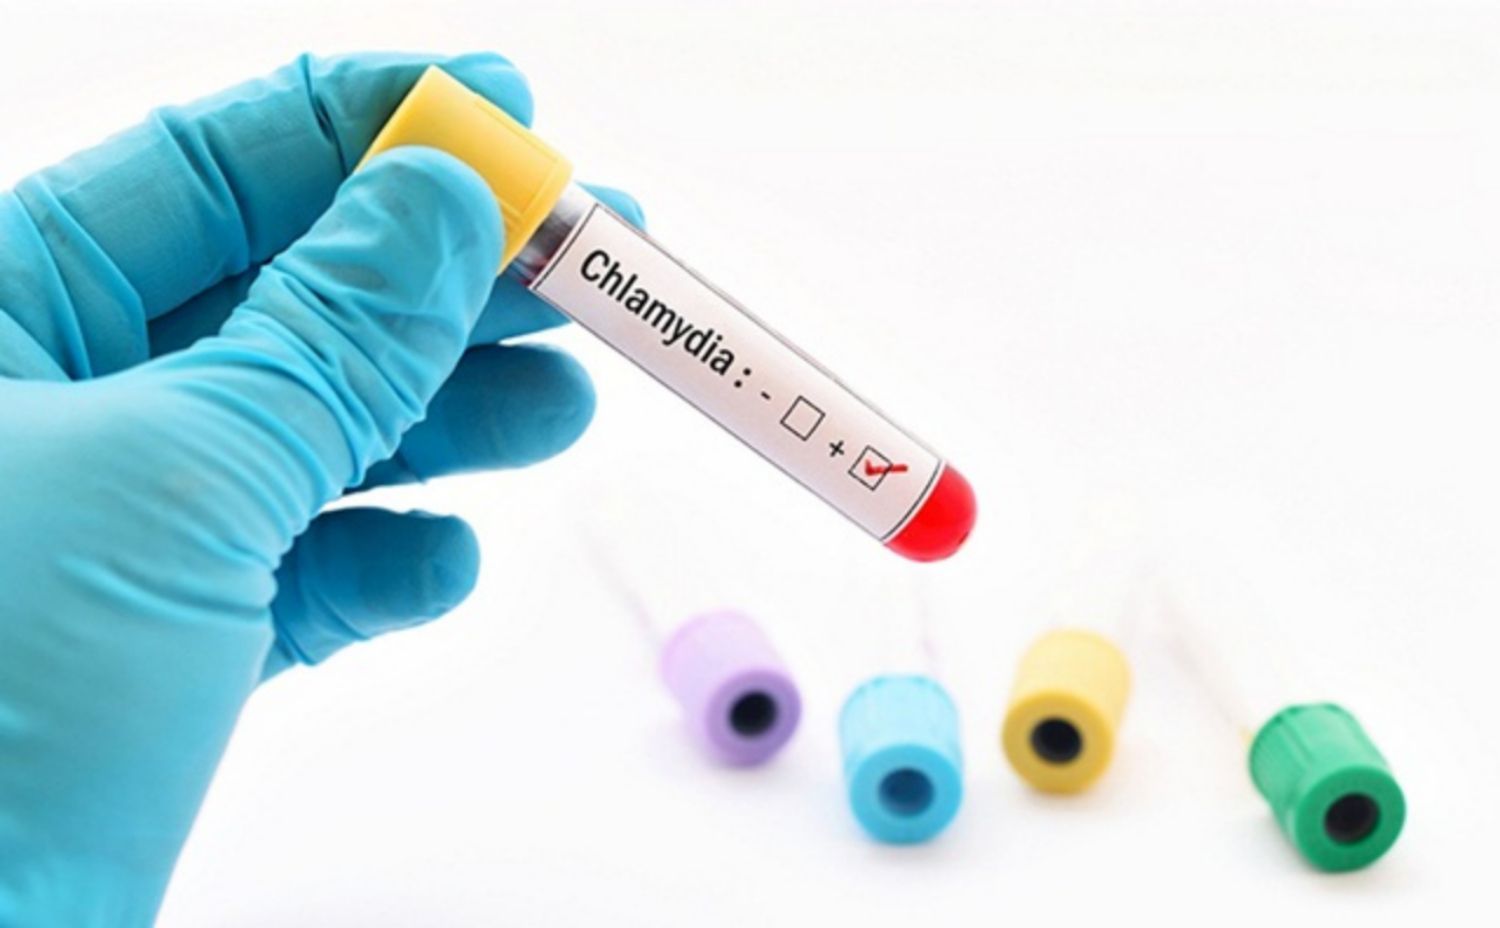 Chlamydia test